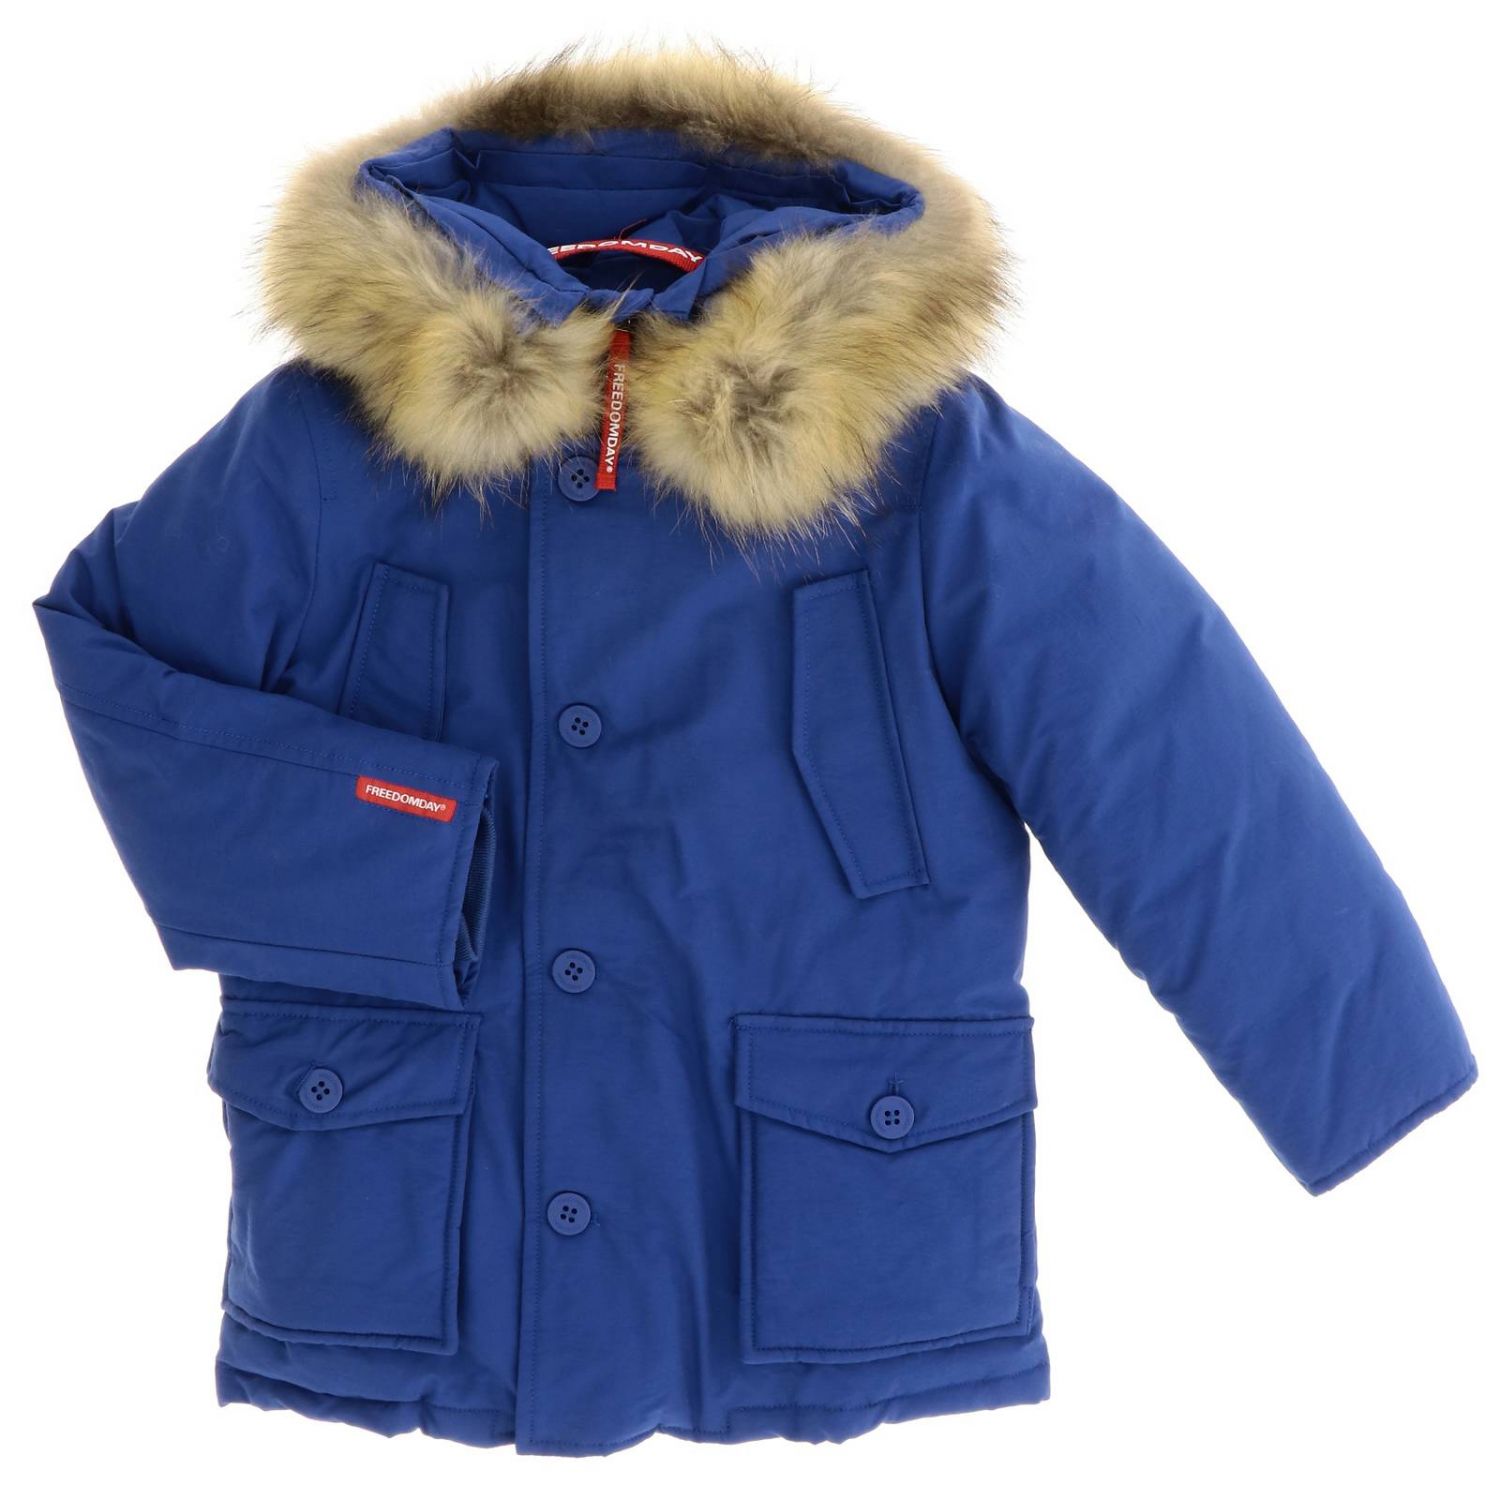 Freedomday Outlet: Jacket kids - Royal Blue | Jacket Freedomday ...